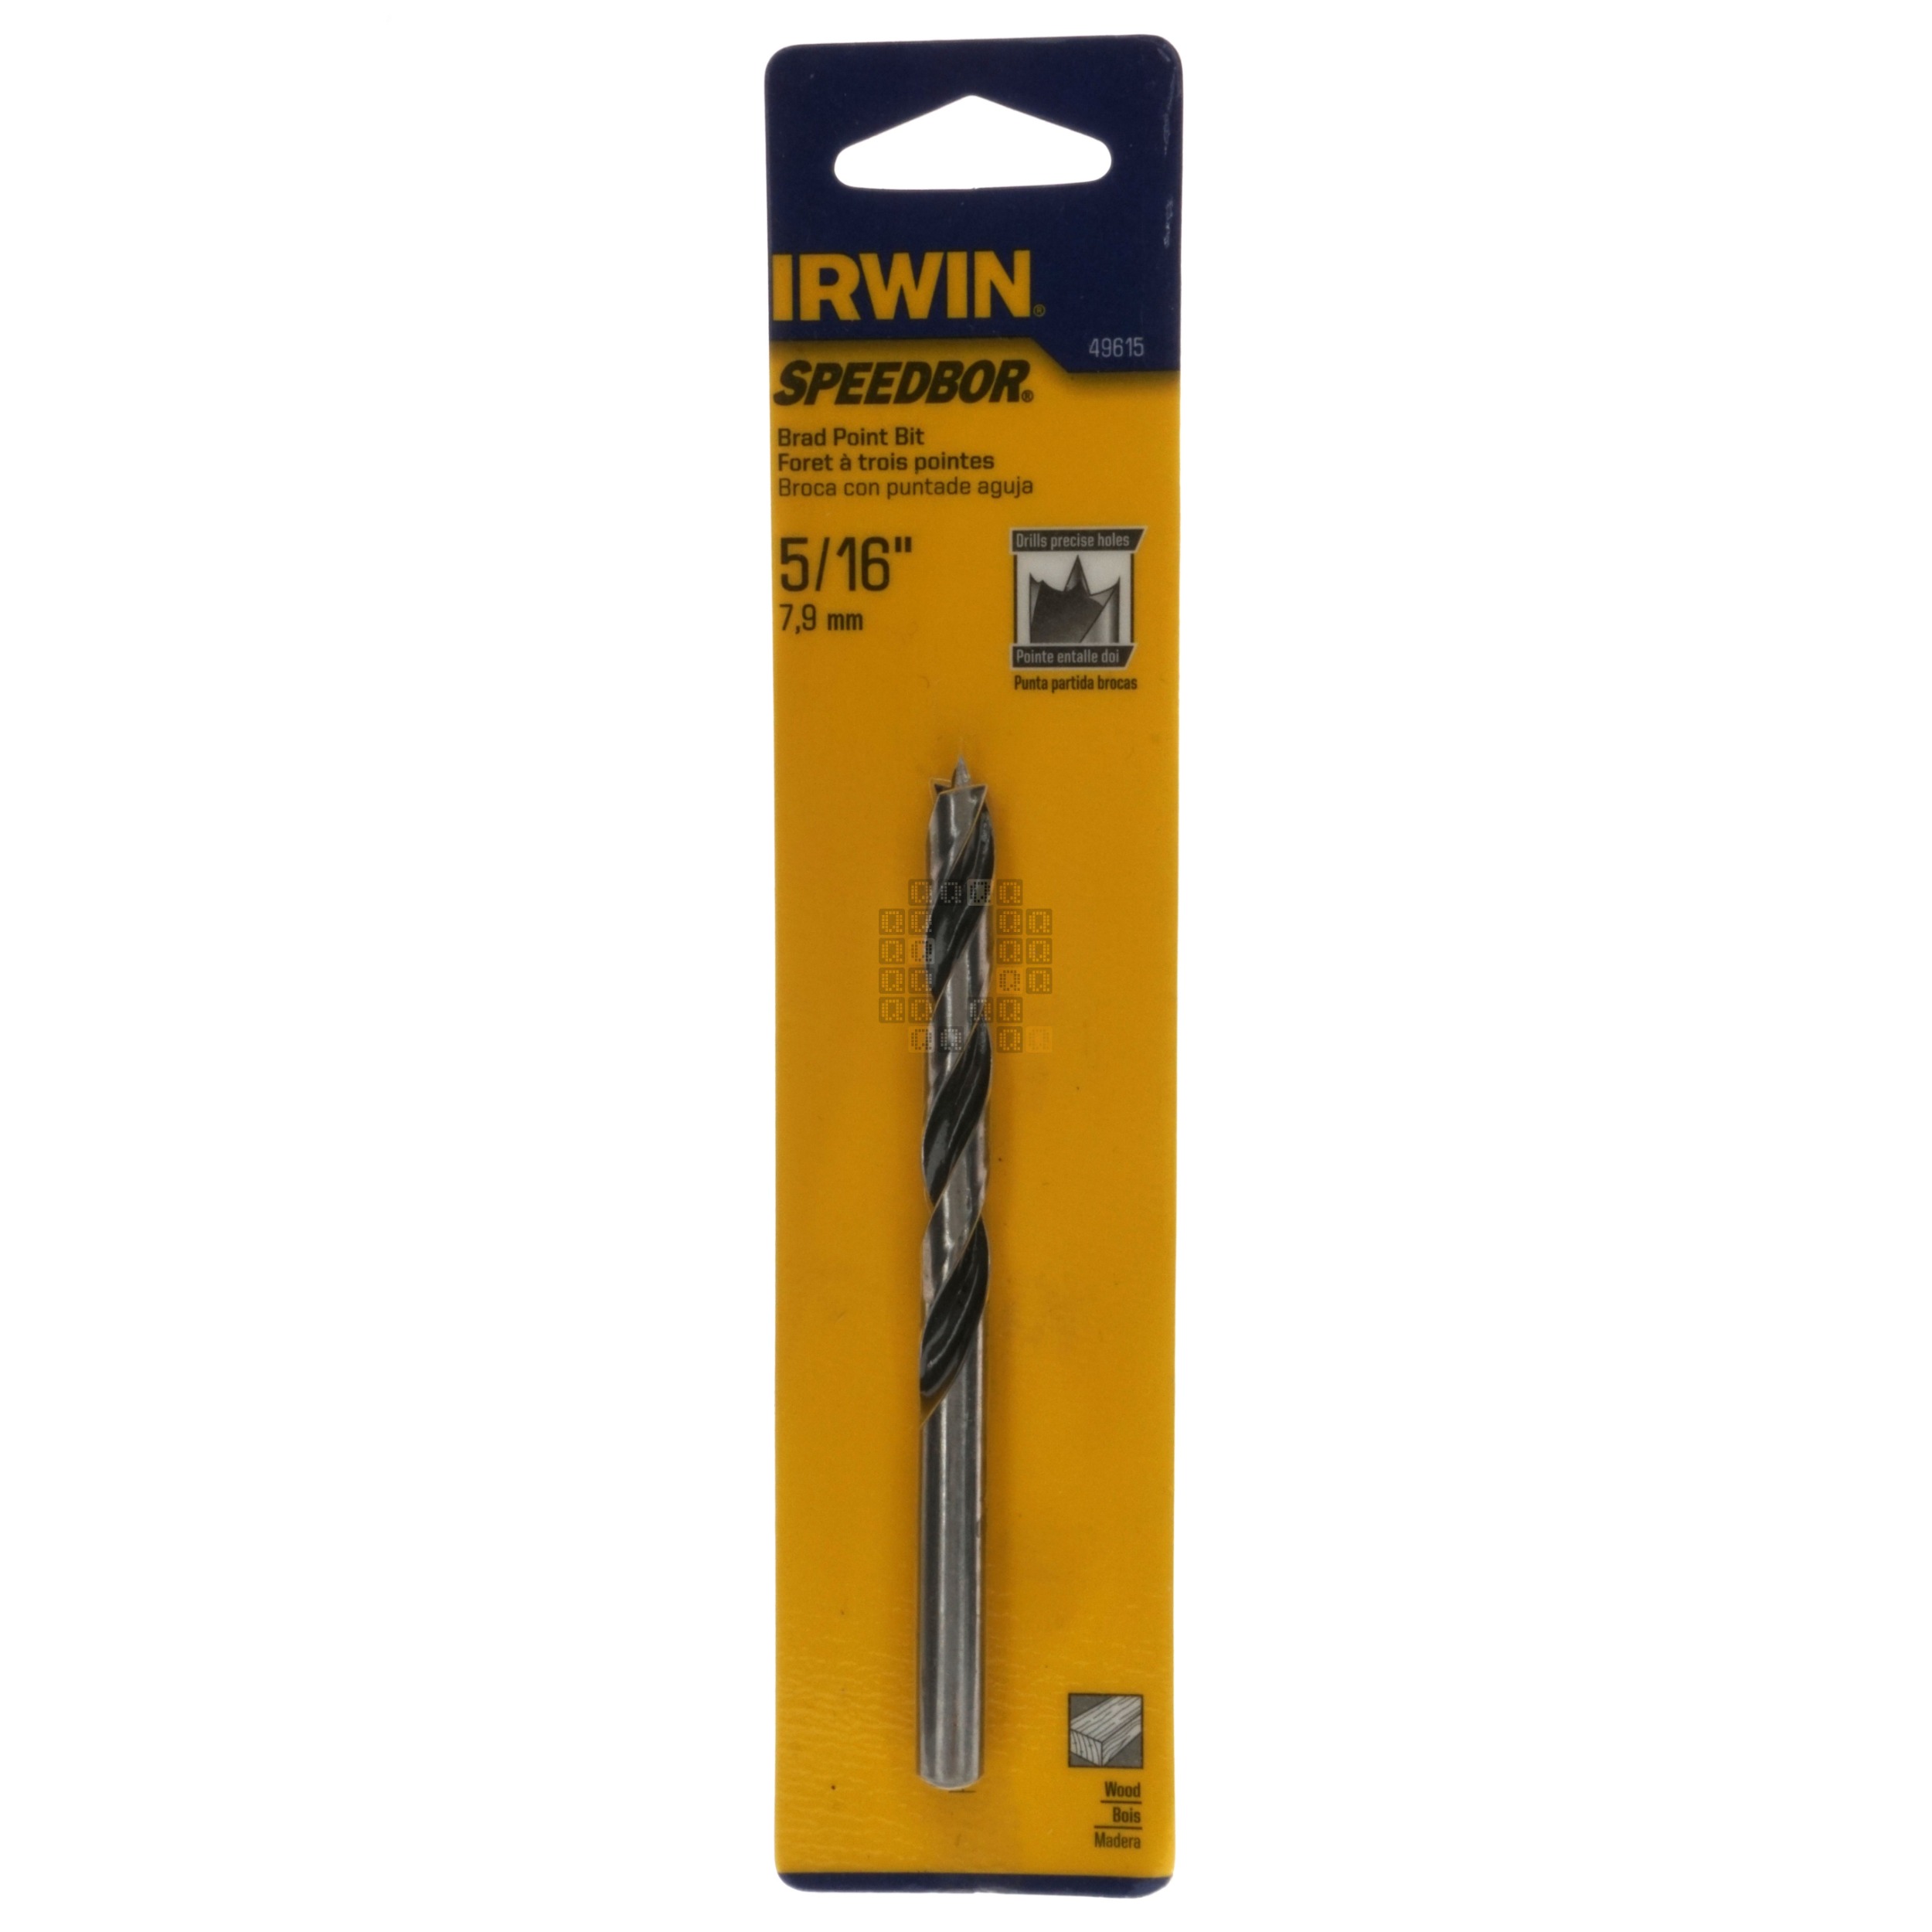 Irwin Tools 49615 SPEEDBOR Brad Point Drill Bit for Wood, 5/16"